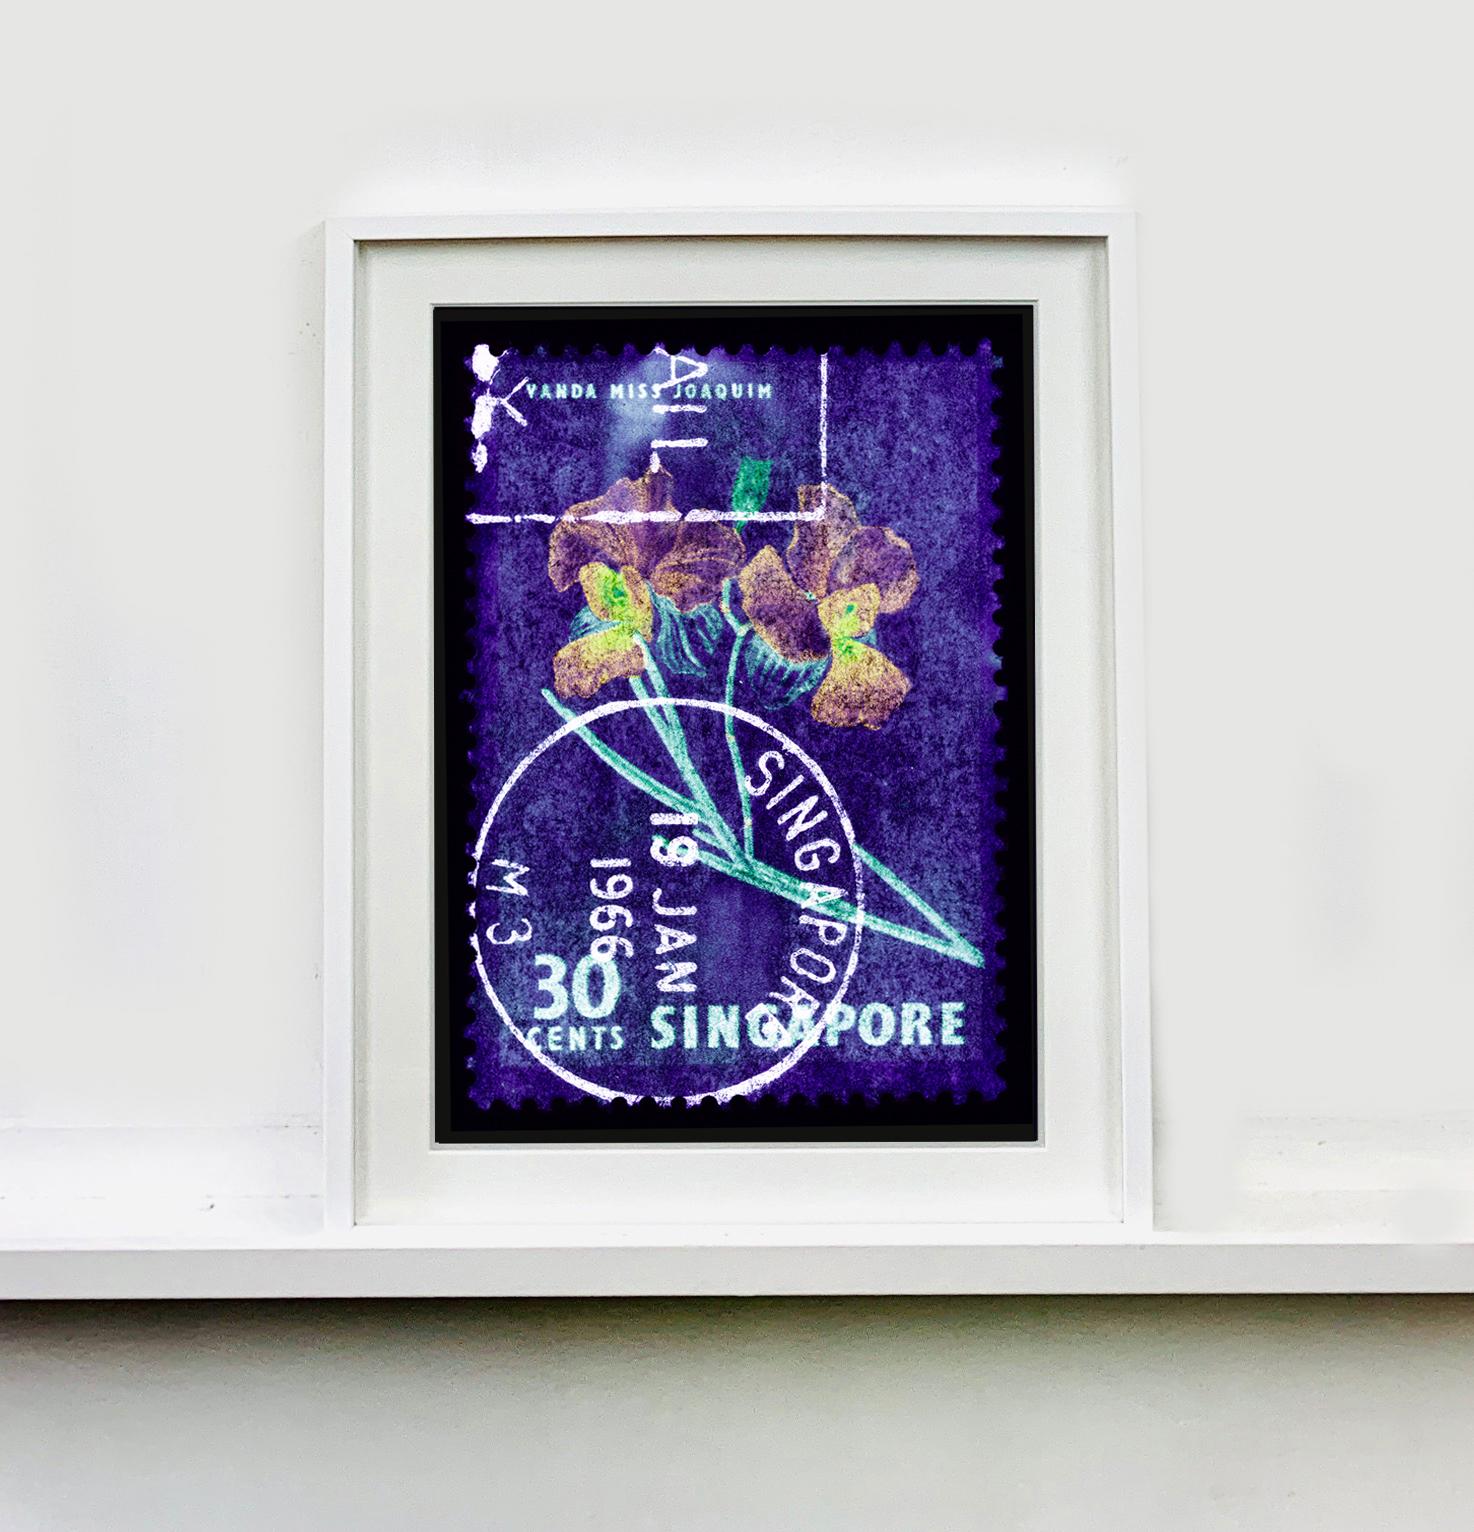 30 Cents Singapour Orchid Purple, de la Collection de timbres Heidler & Heeps.
Ces timbres-poste historiques qui composent la collection de timbres Heidler & Heeps, série Singapour 